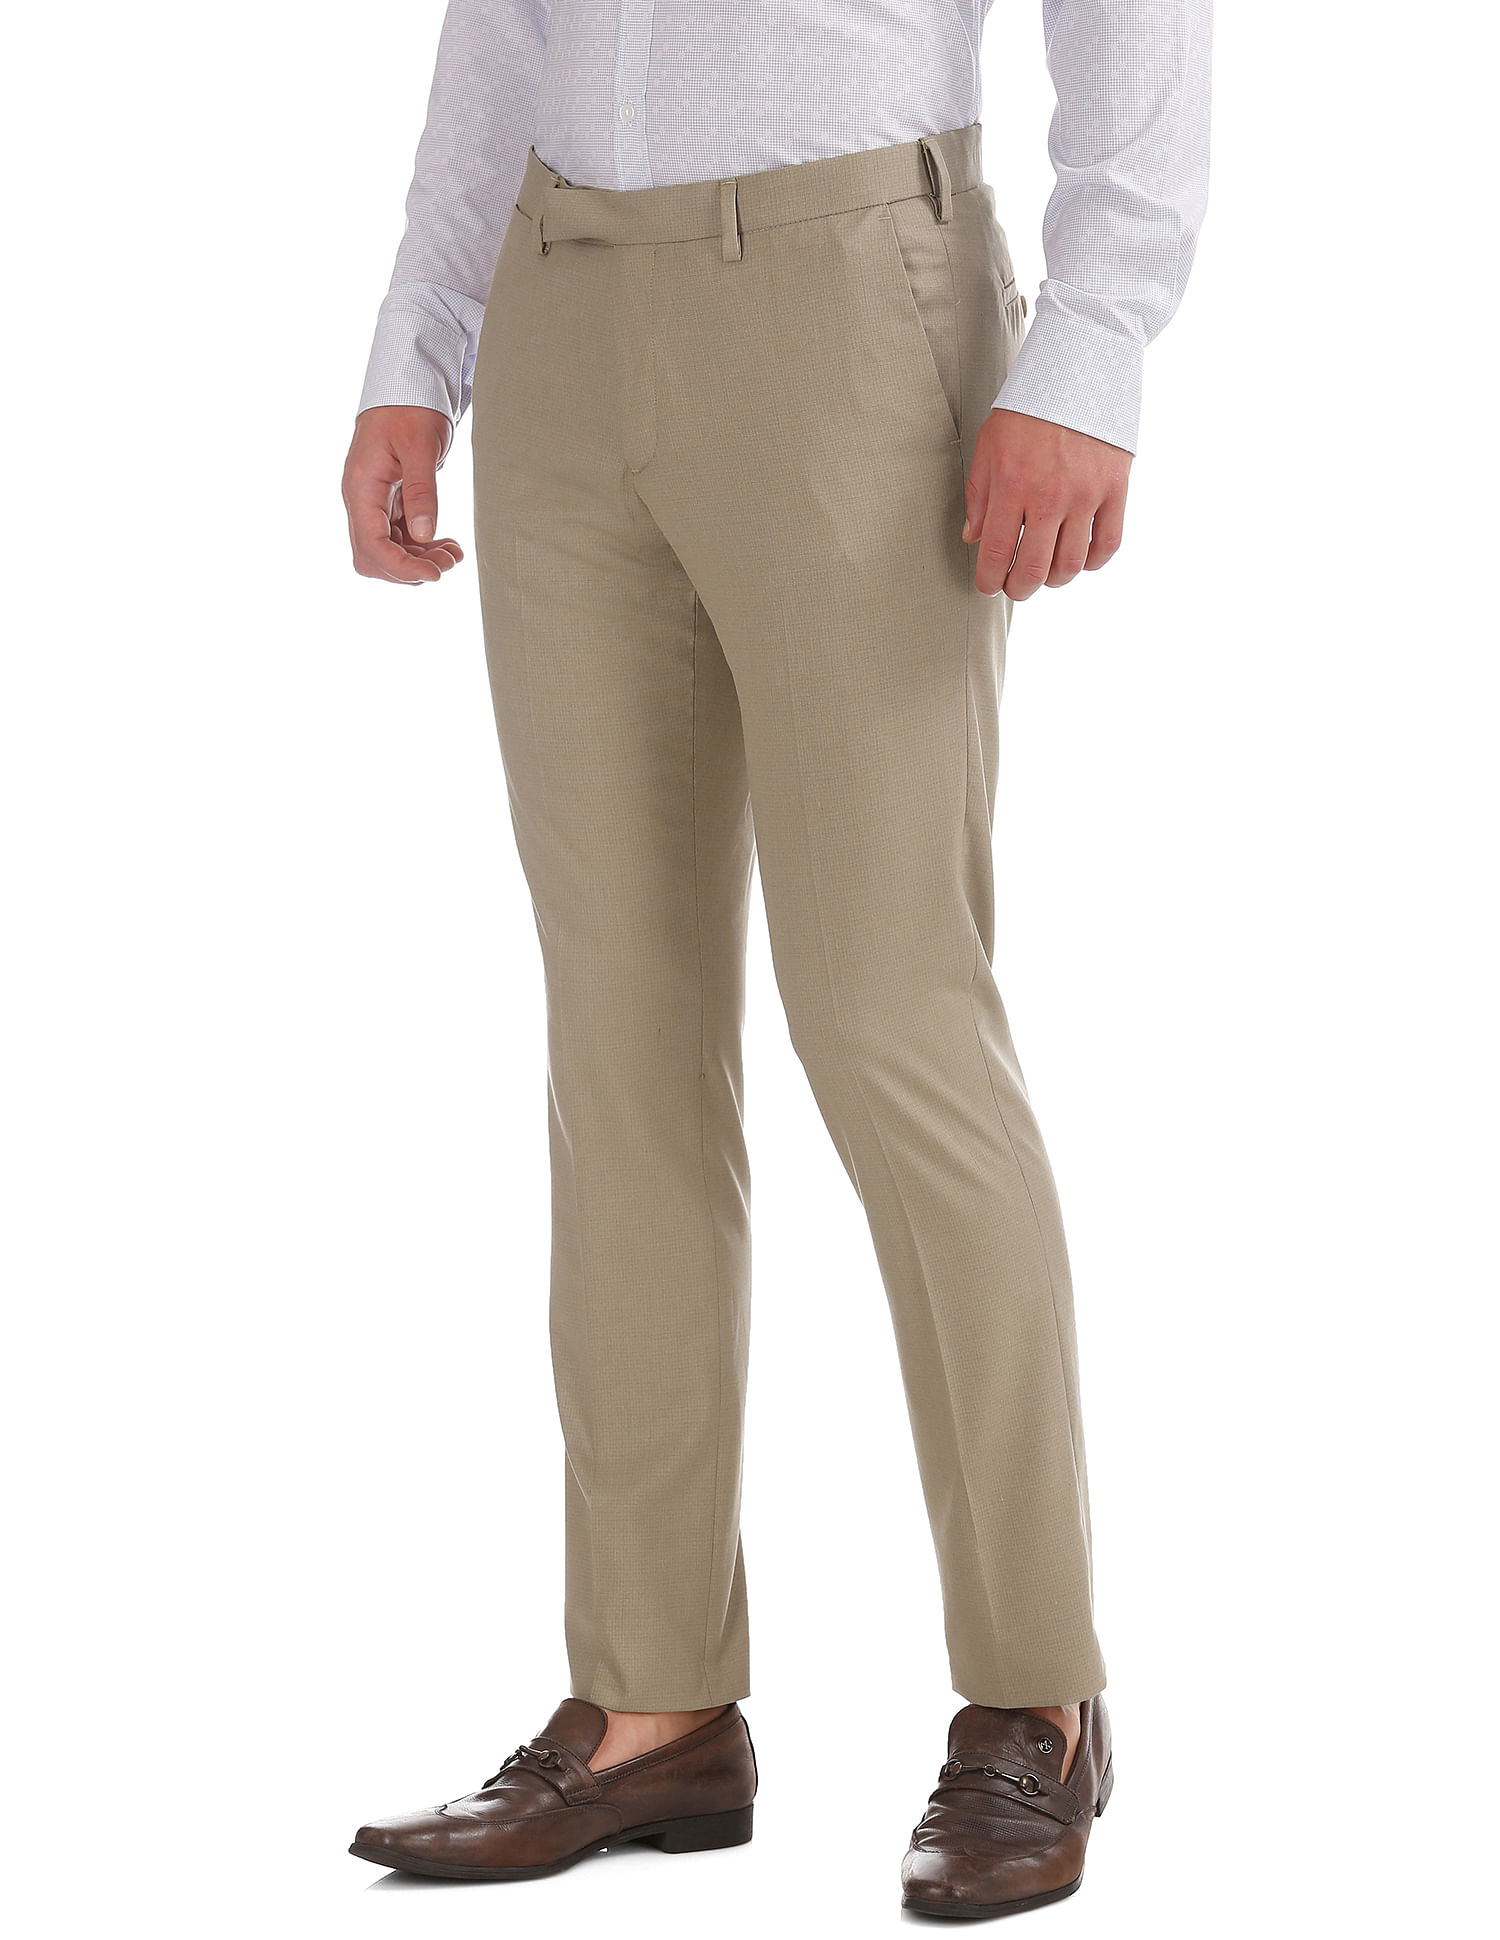 U.S. Polo Assn. Men Casual Wear Solid Trouser